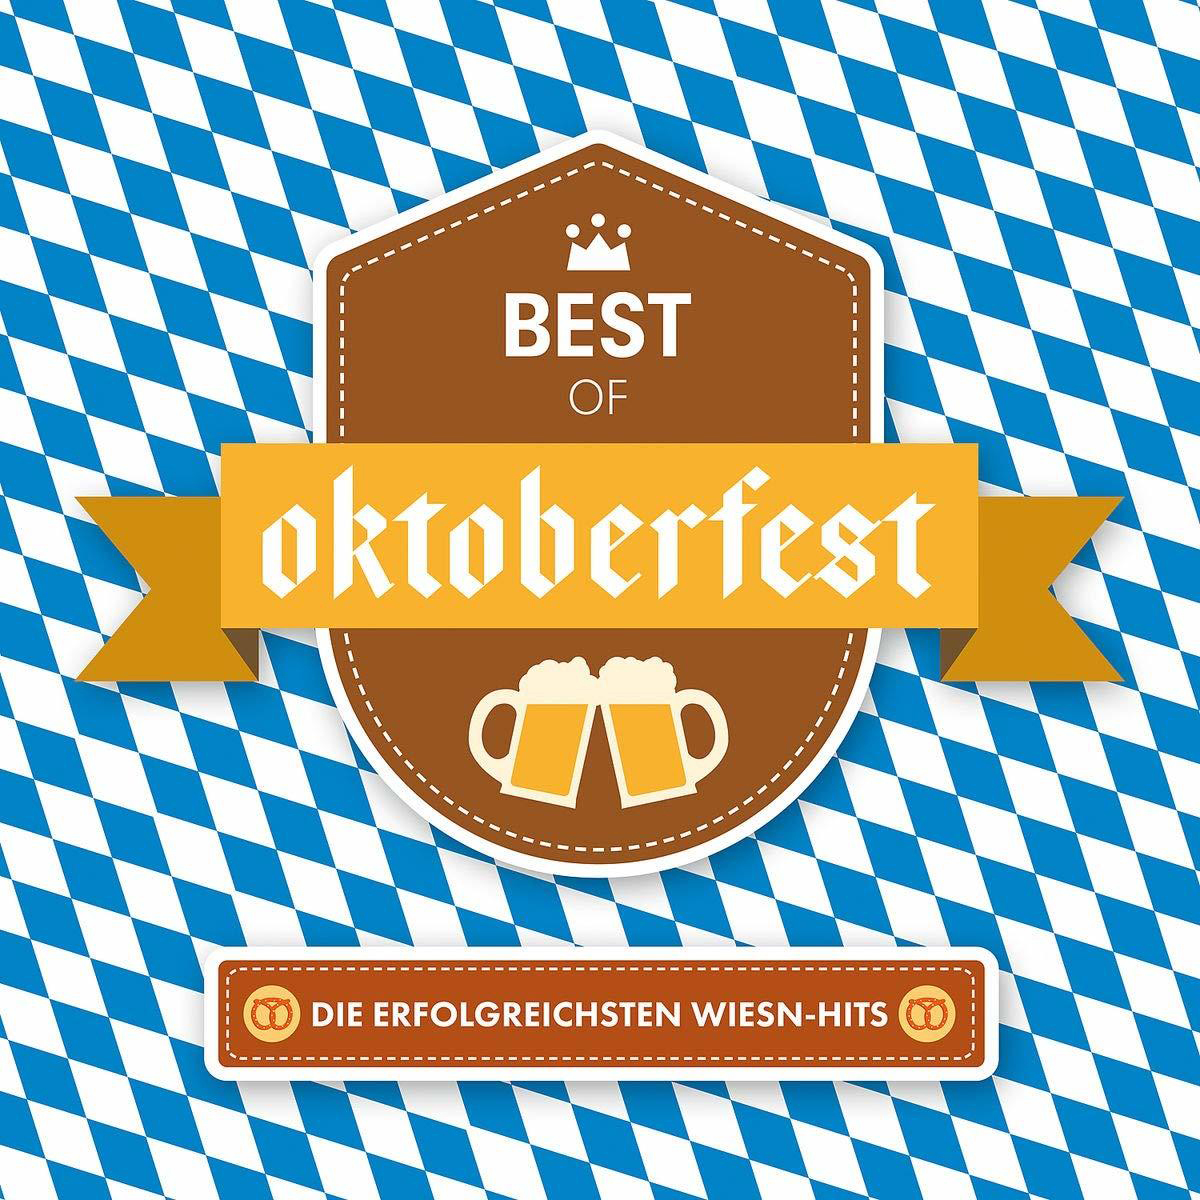 VARIOUS - Wiesn-Hits Of Best - (CD) Oktoberfest-Erfolgreichsten